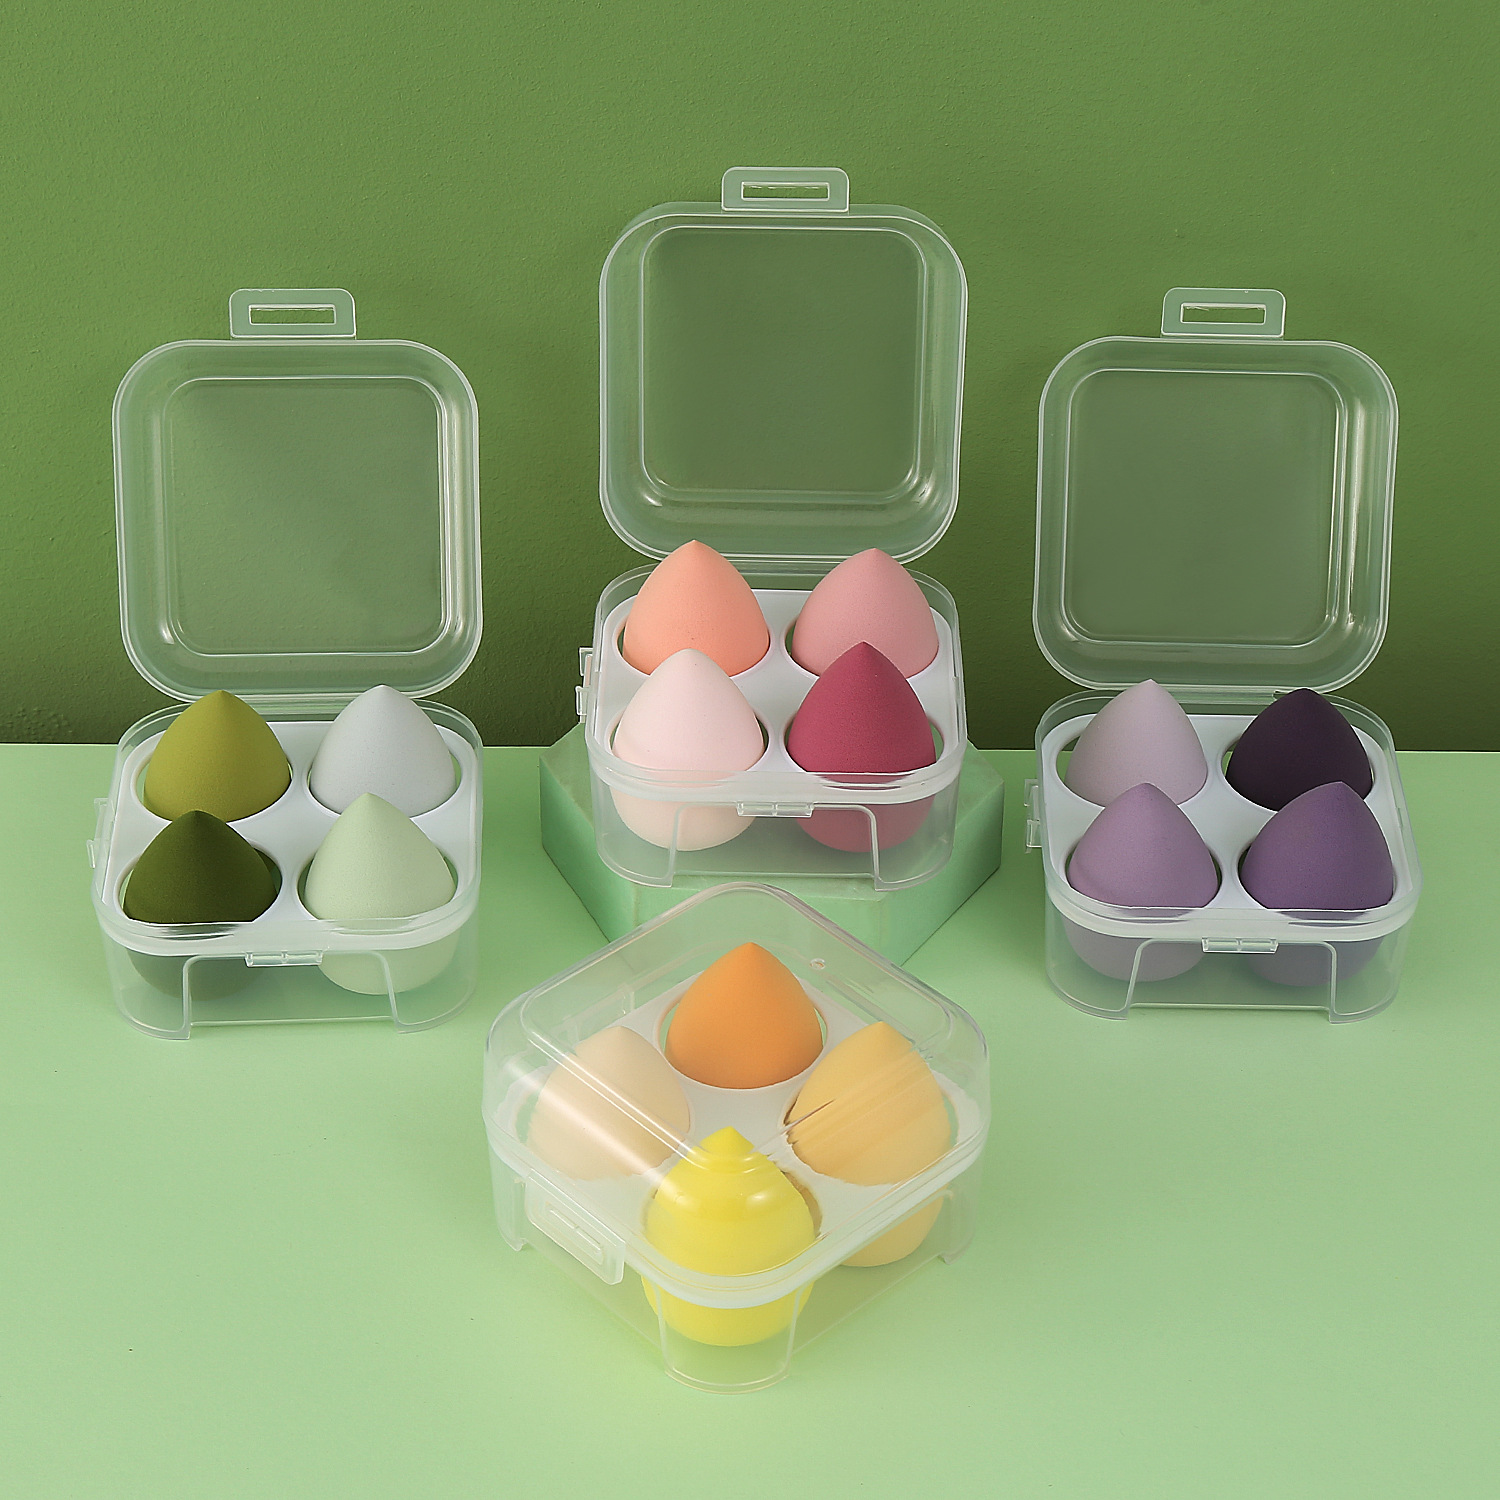 厂家直销 A品非乳胶美妆蛋 4个装美妆蛋套装 四格收纳盒装美妆蛋